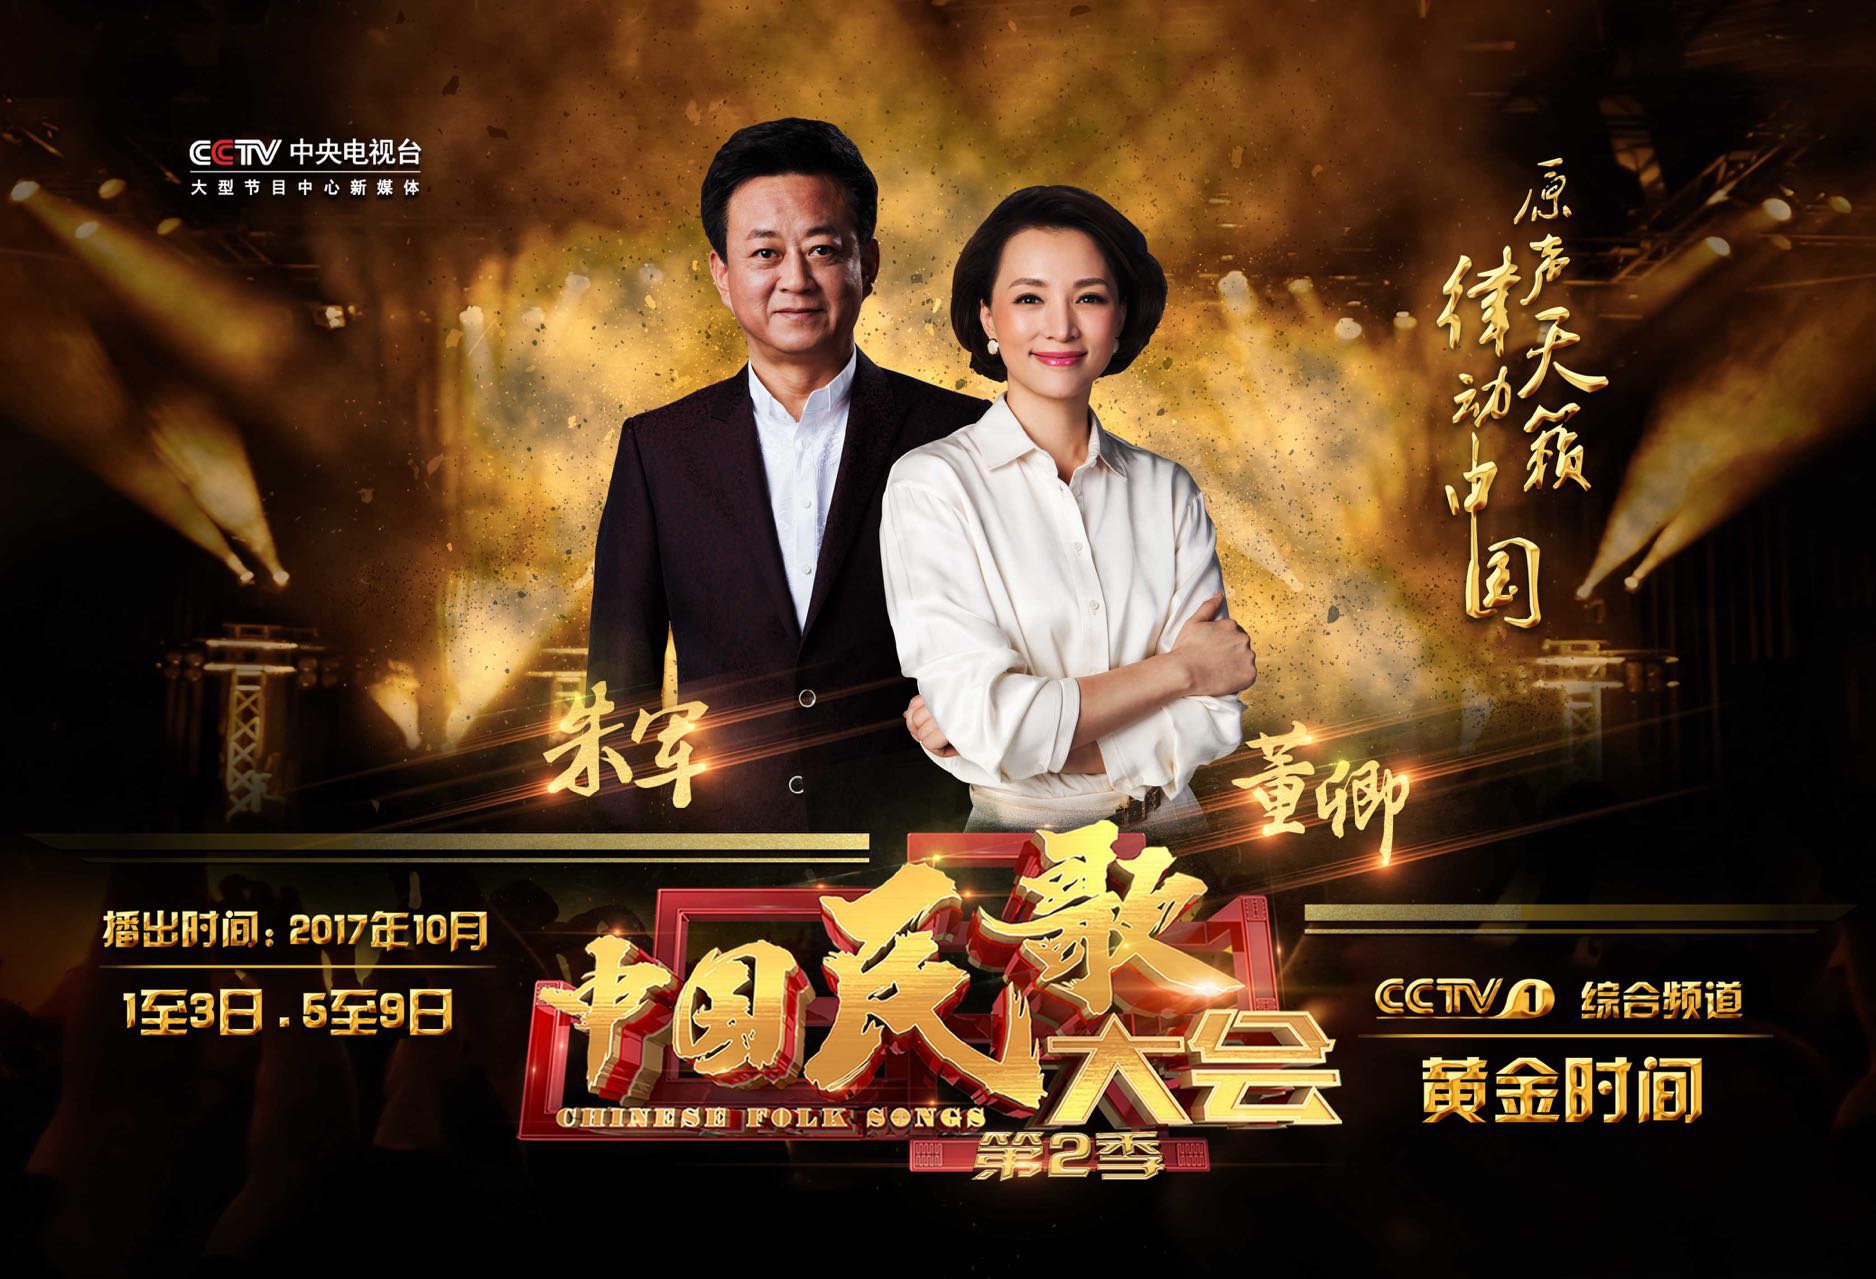 《中国民歌大会》第二季将于10月1日开播 - 国